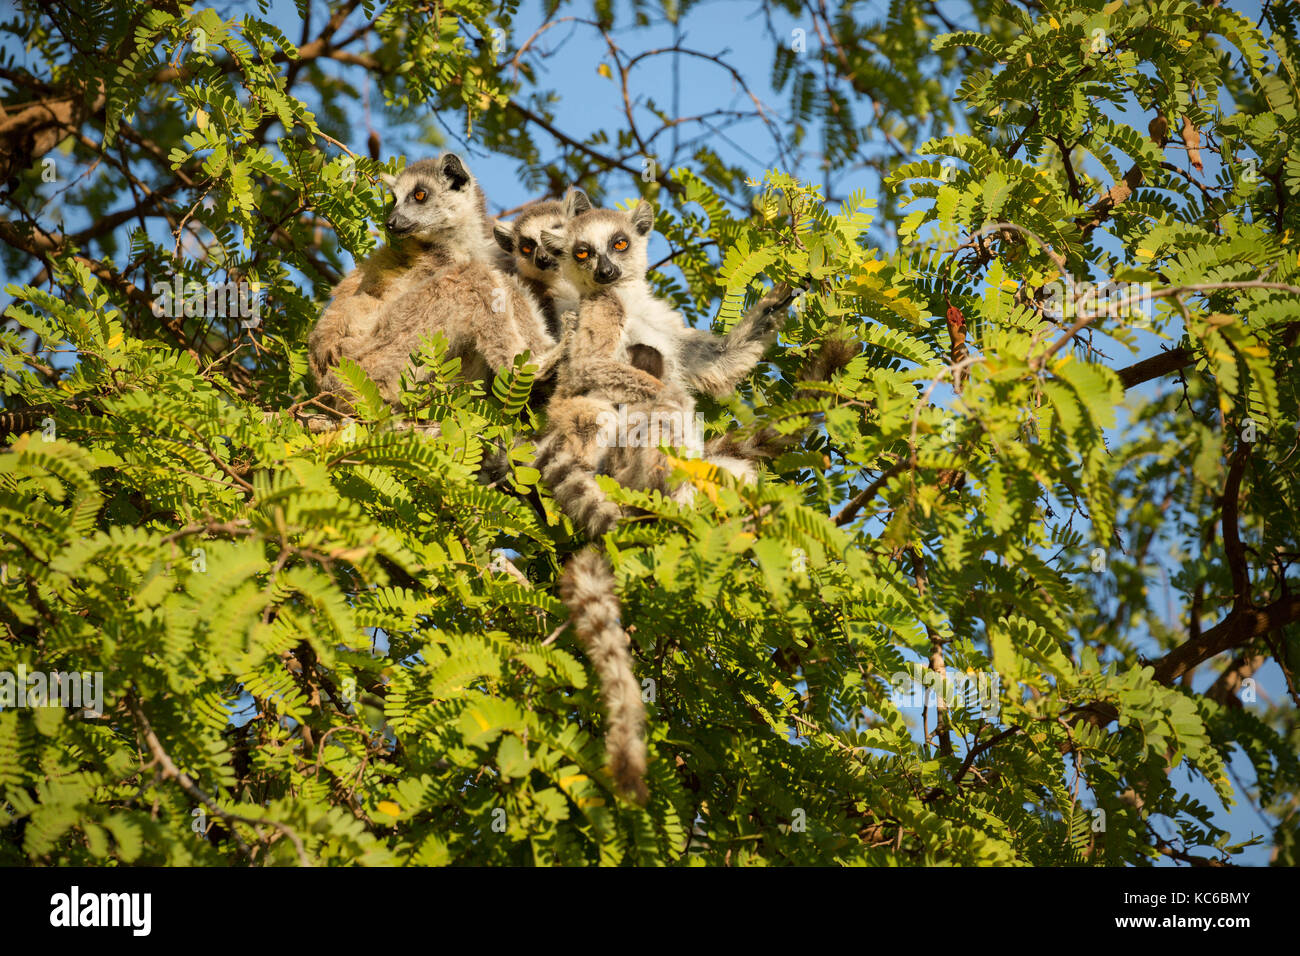 África, madgascar, reserva berenty, wild lémures de cola anillada (Lemur catta) en peligro de extinción, sentado en el árbol. Foto de stock